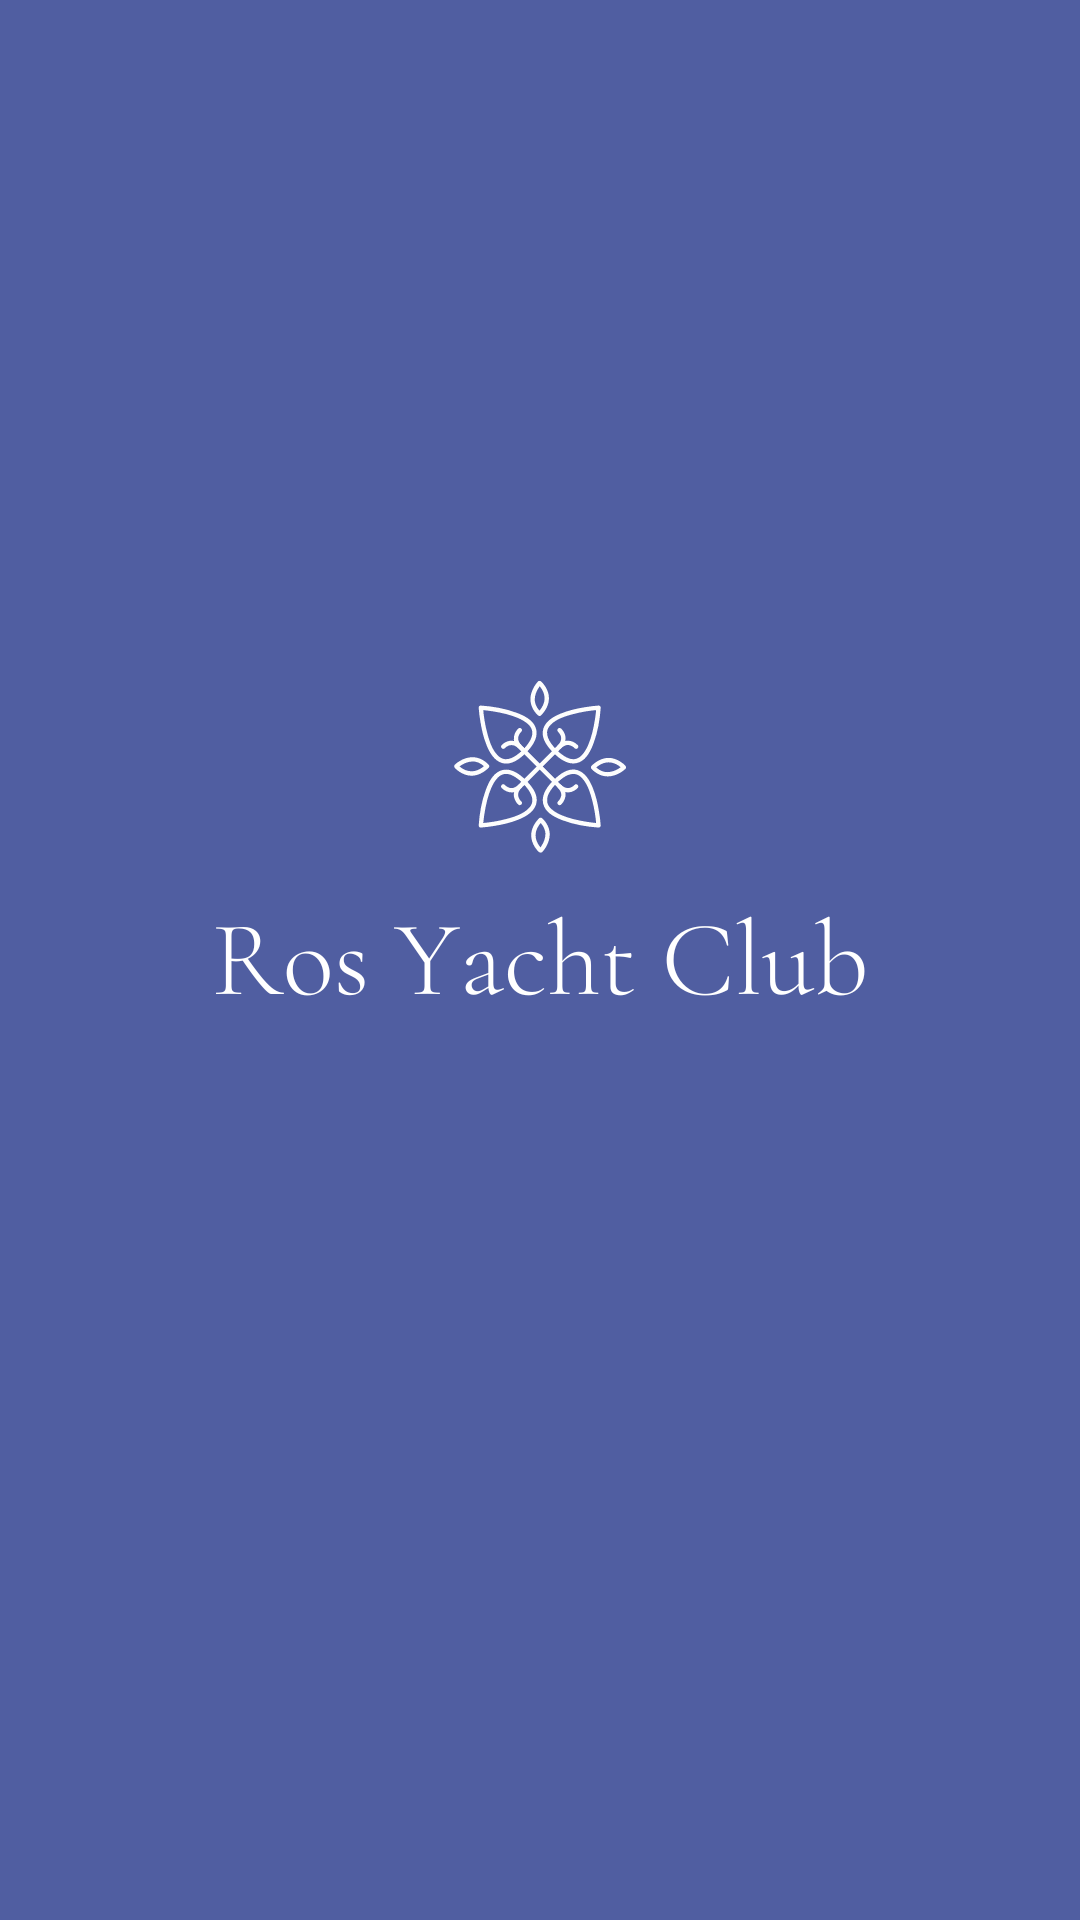 Ros Yatch club